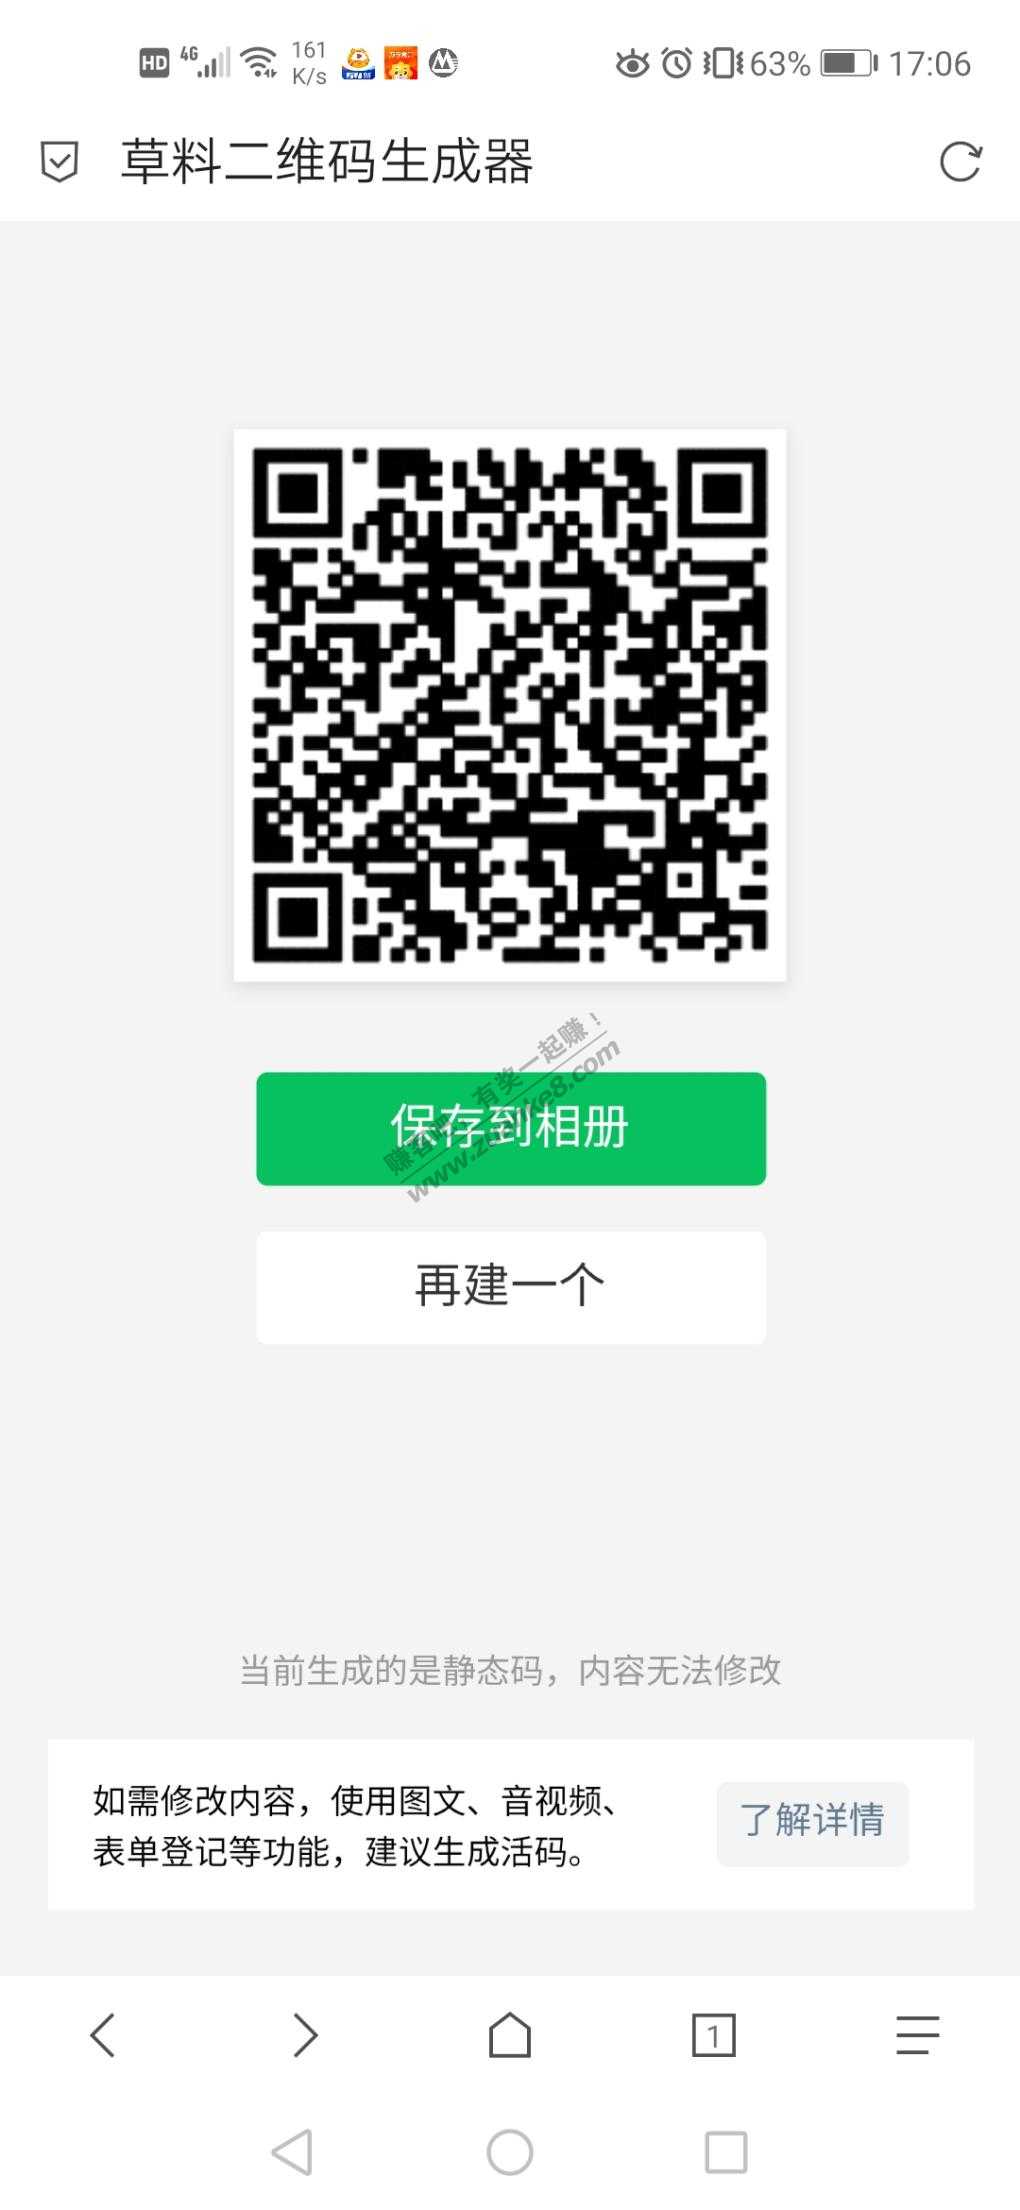 招商5滴滴券-惠小助(52huixz.com)